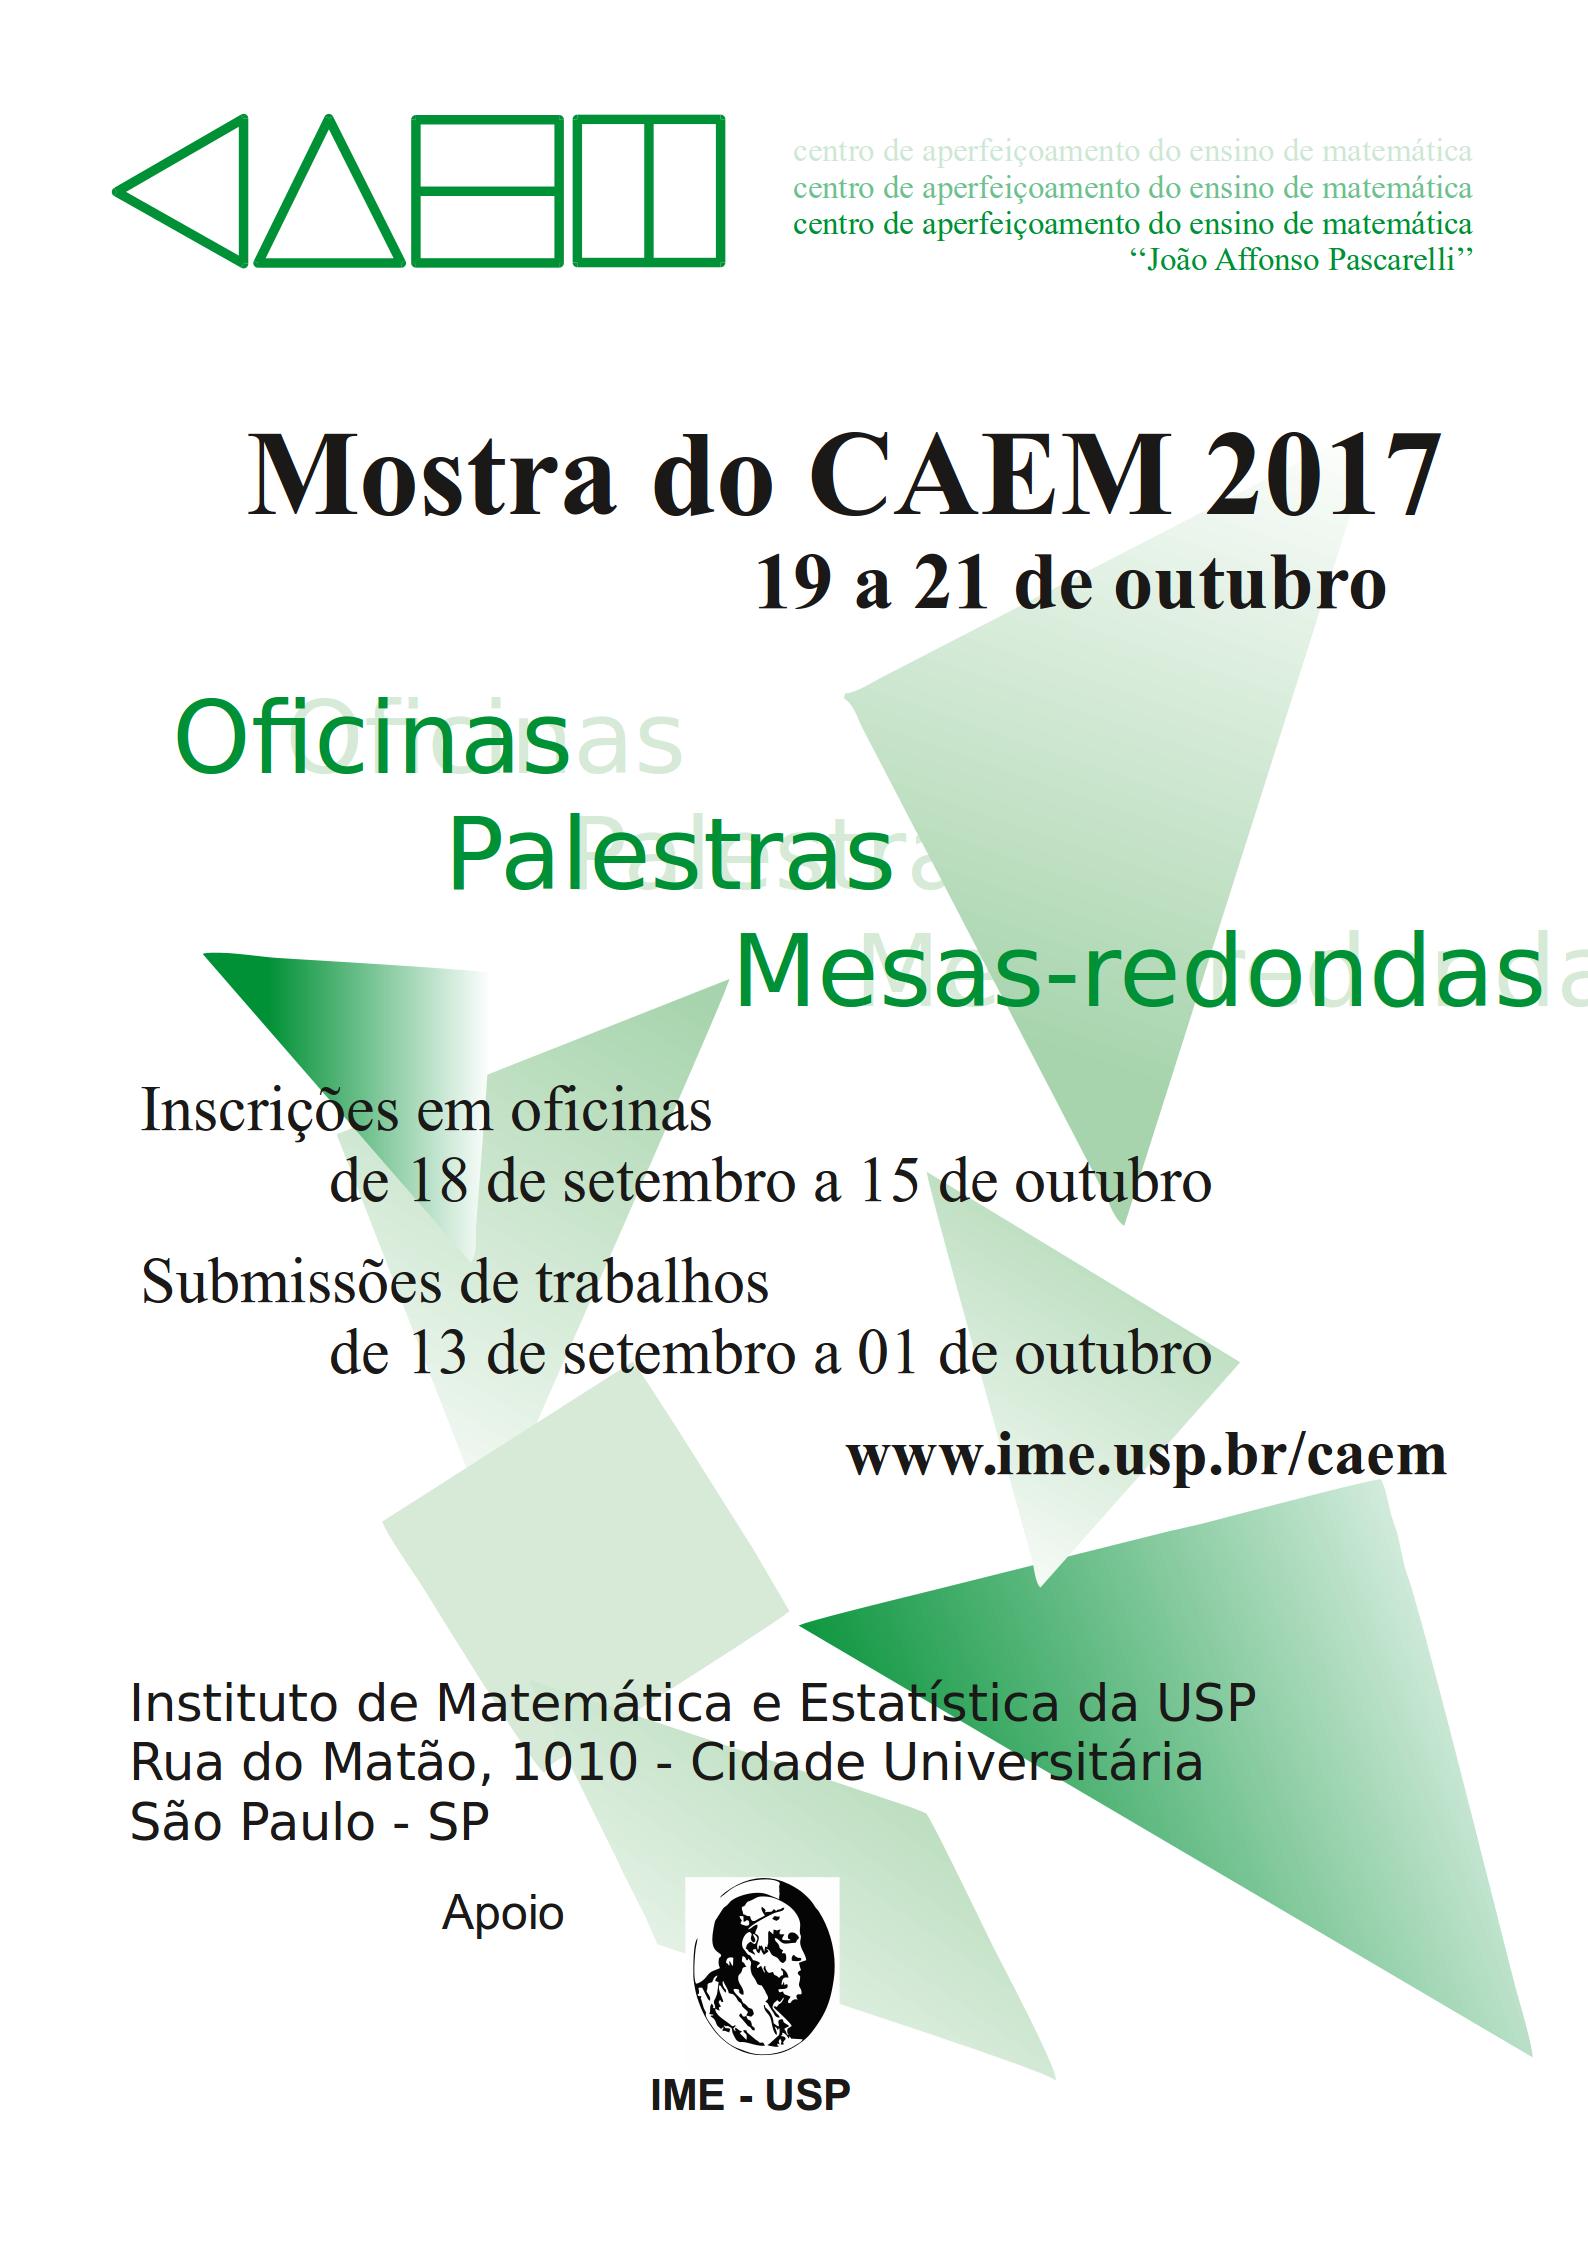 Link Anais Mostra CAEM 2017